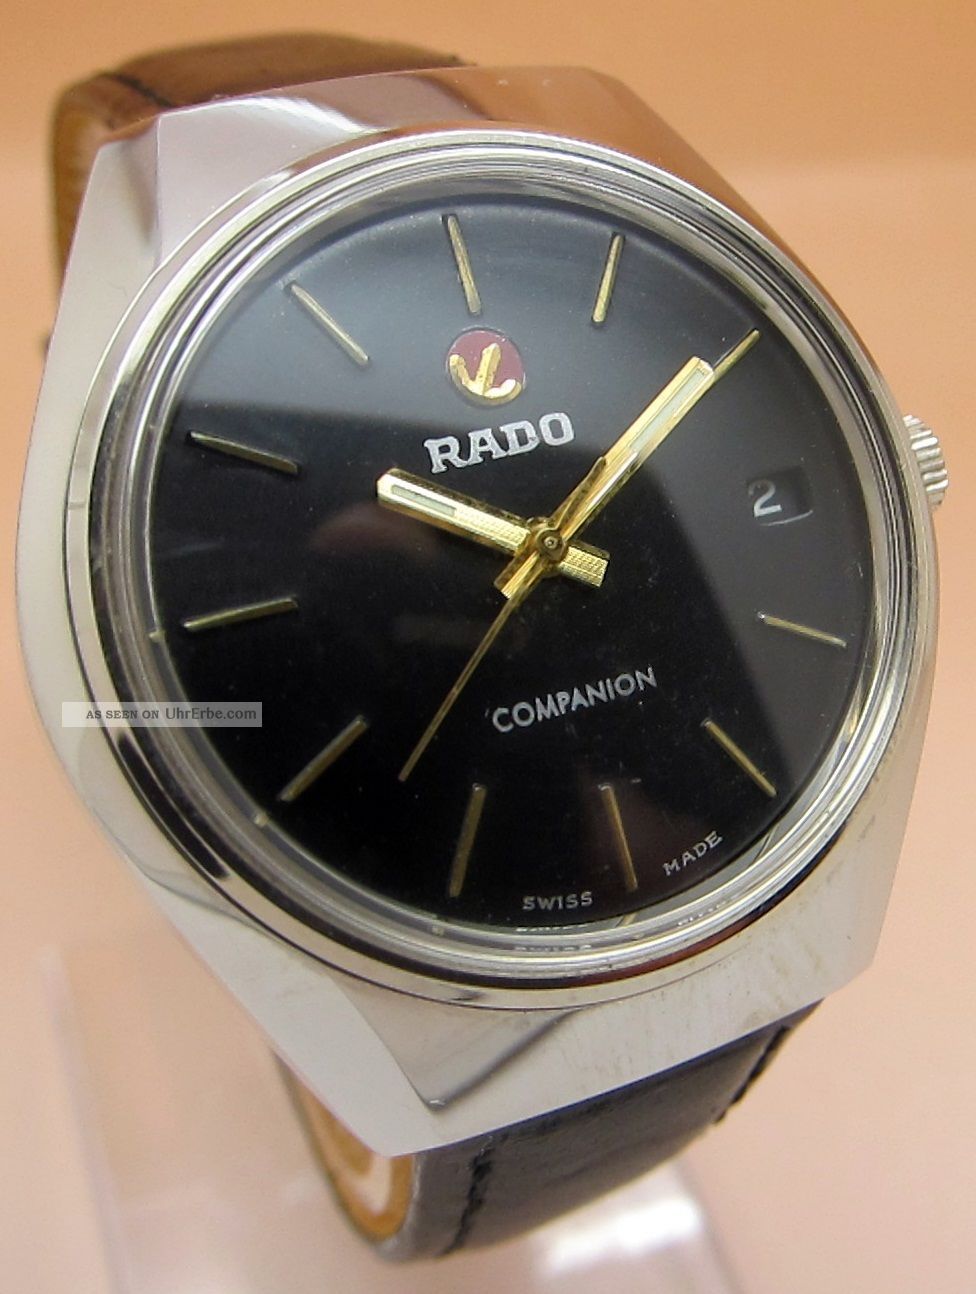 Rado Companion Glasboden Mechanische Uhr 17 Jewels Datumanzeige Lumi Zeiger Armbanduhren Bild